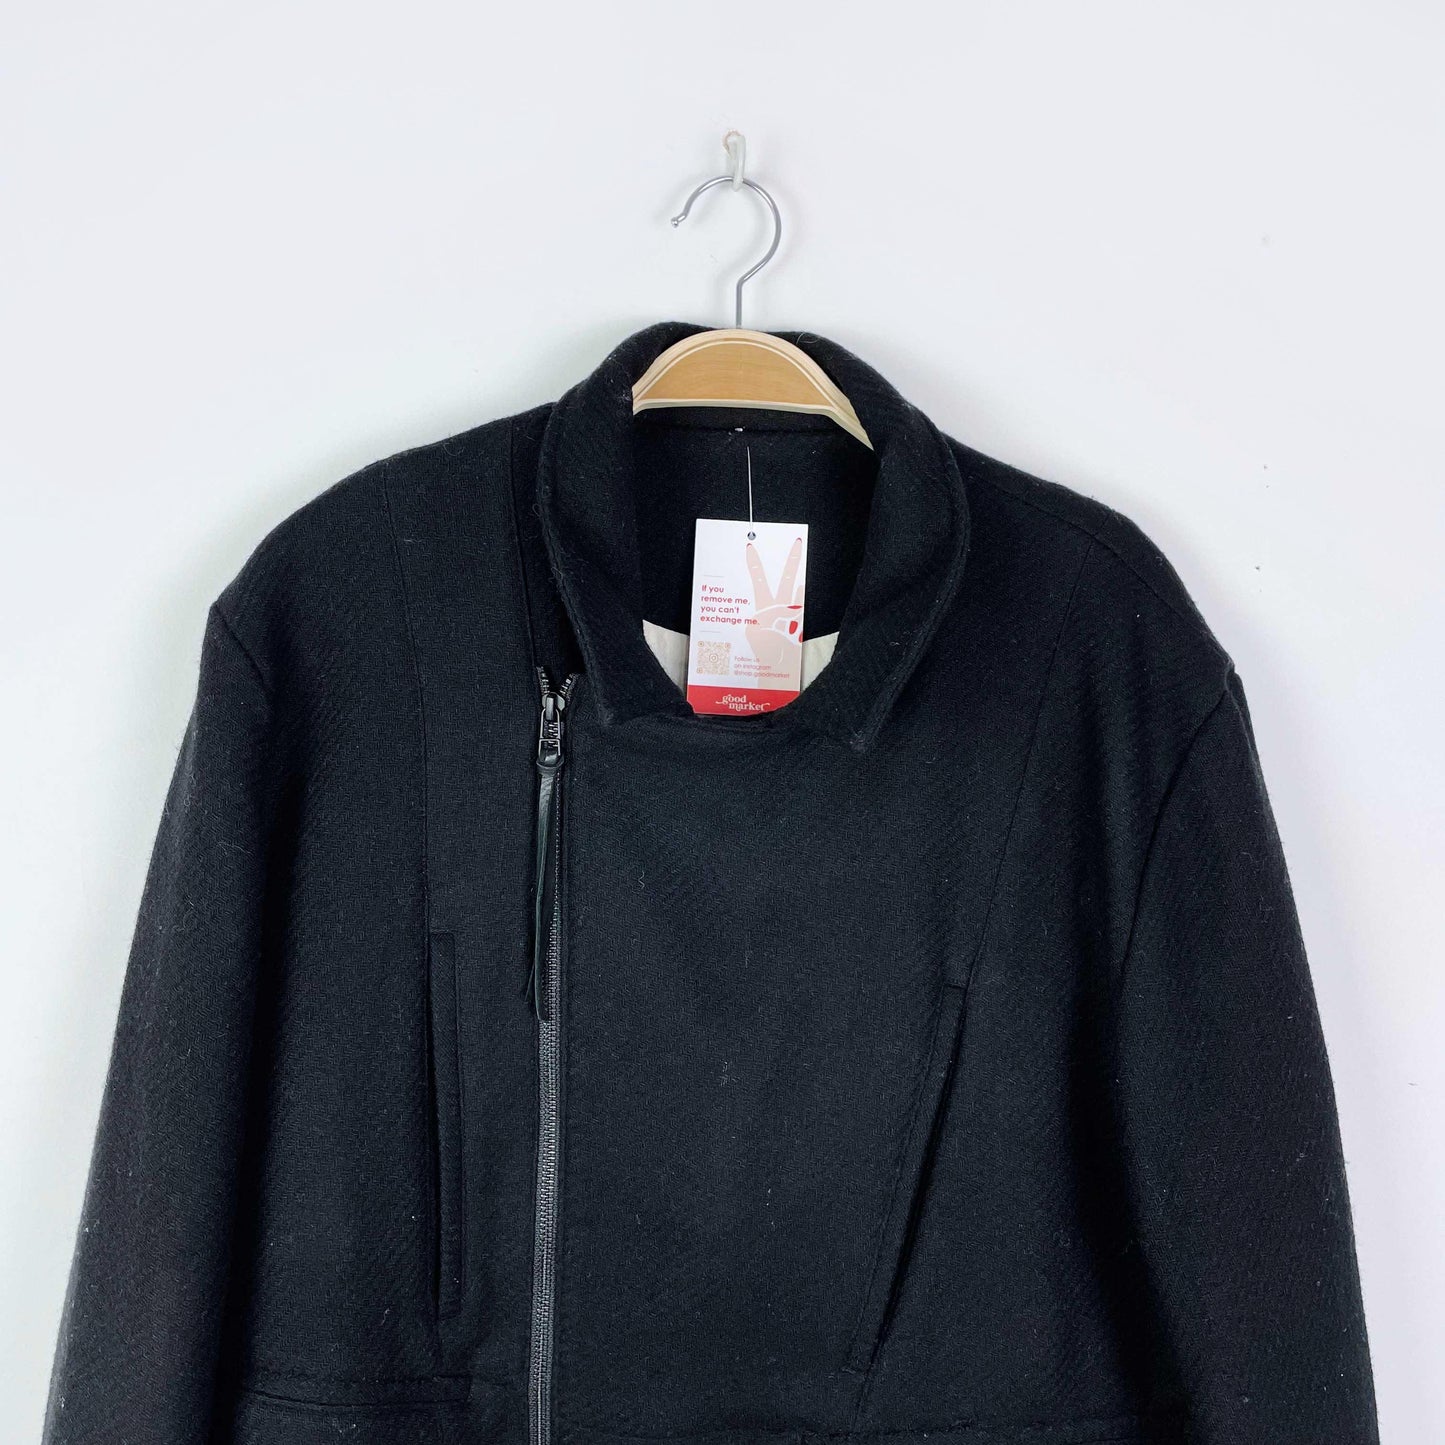 professor e f/w '19 wool asymmetrical zip moto jacket - size 50 EU